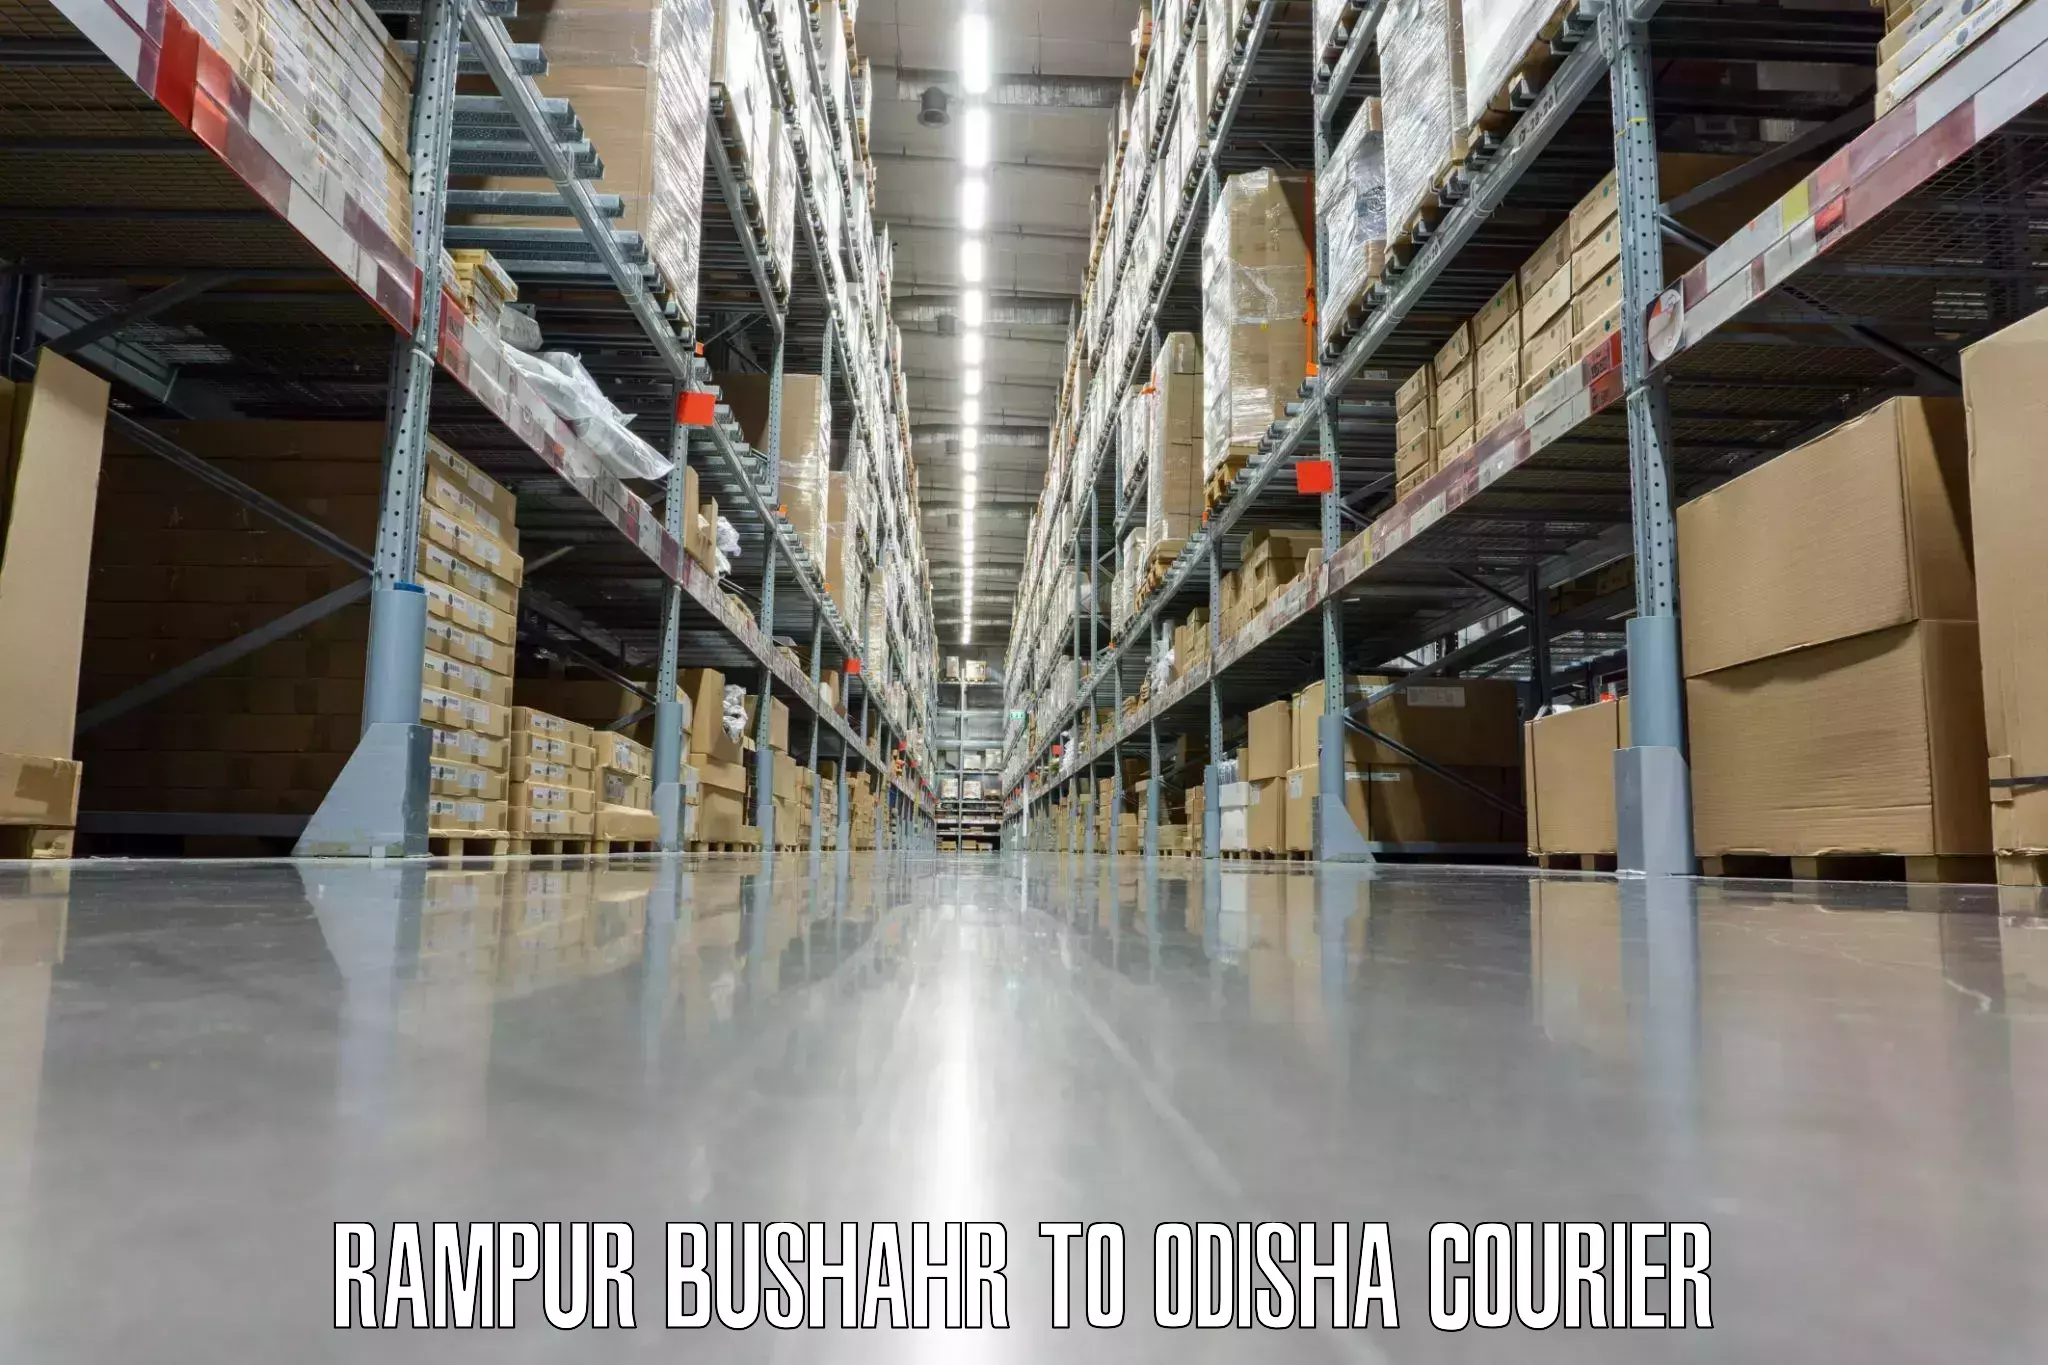 Luggage transport consultancy Rampur Bushahr to Bissam Cuttack